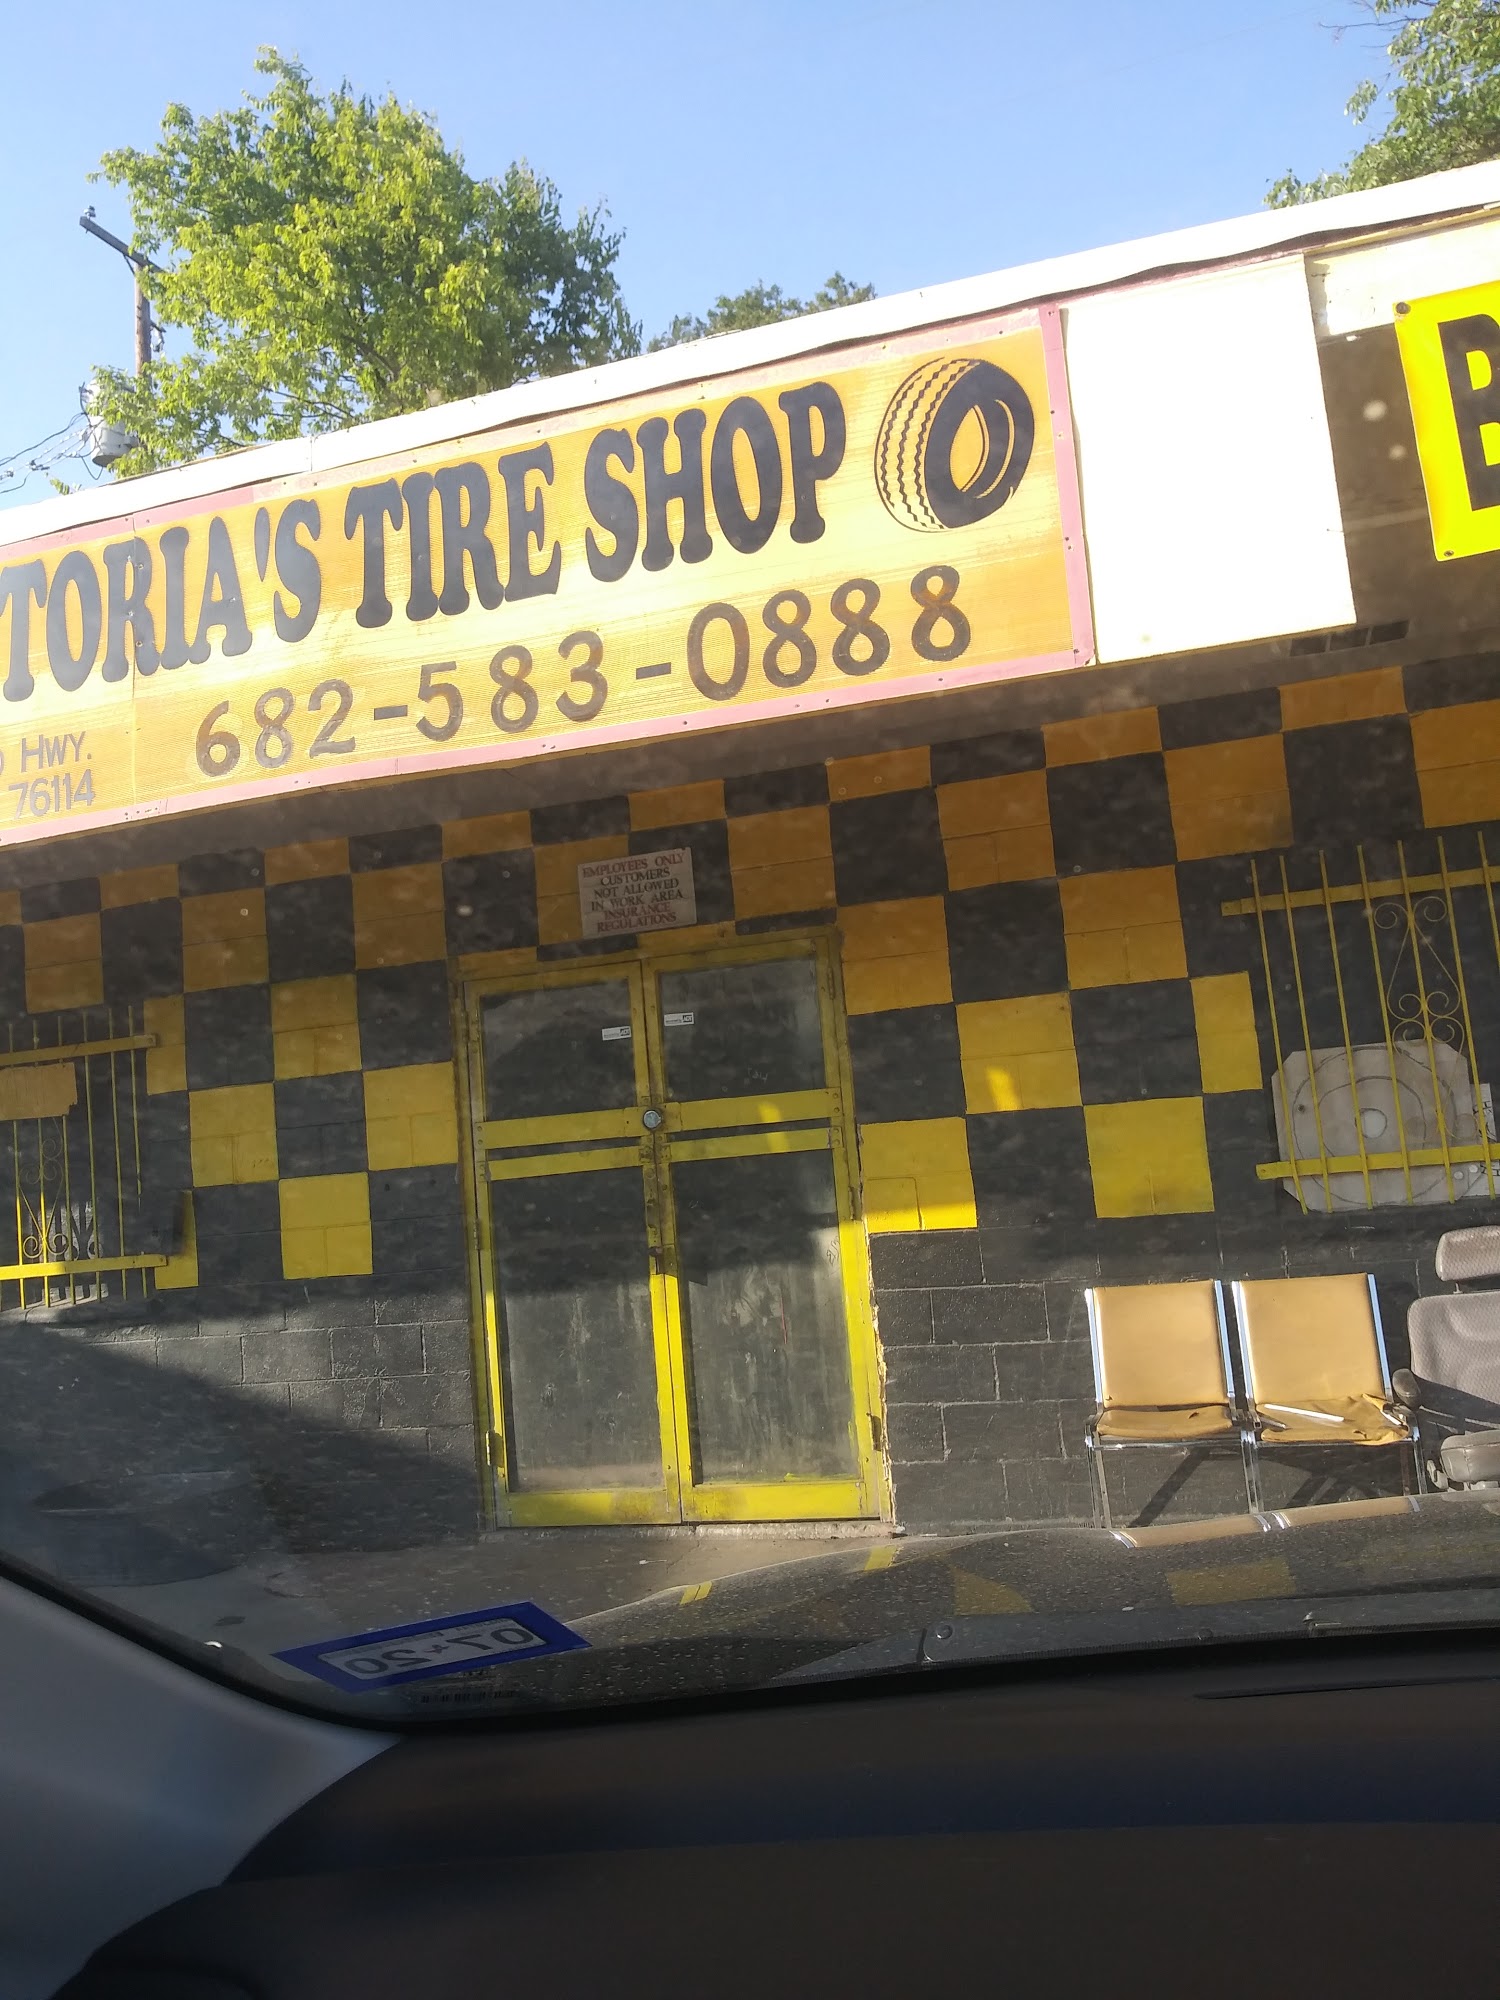 Victoria’s Tire Shop